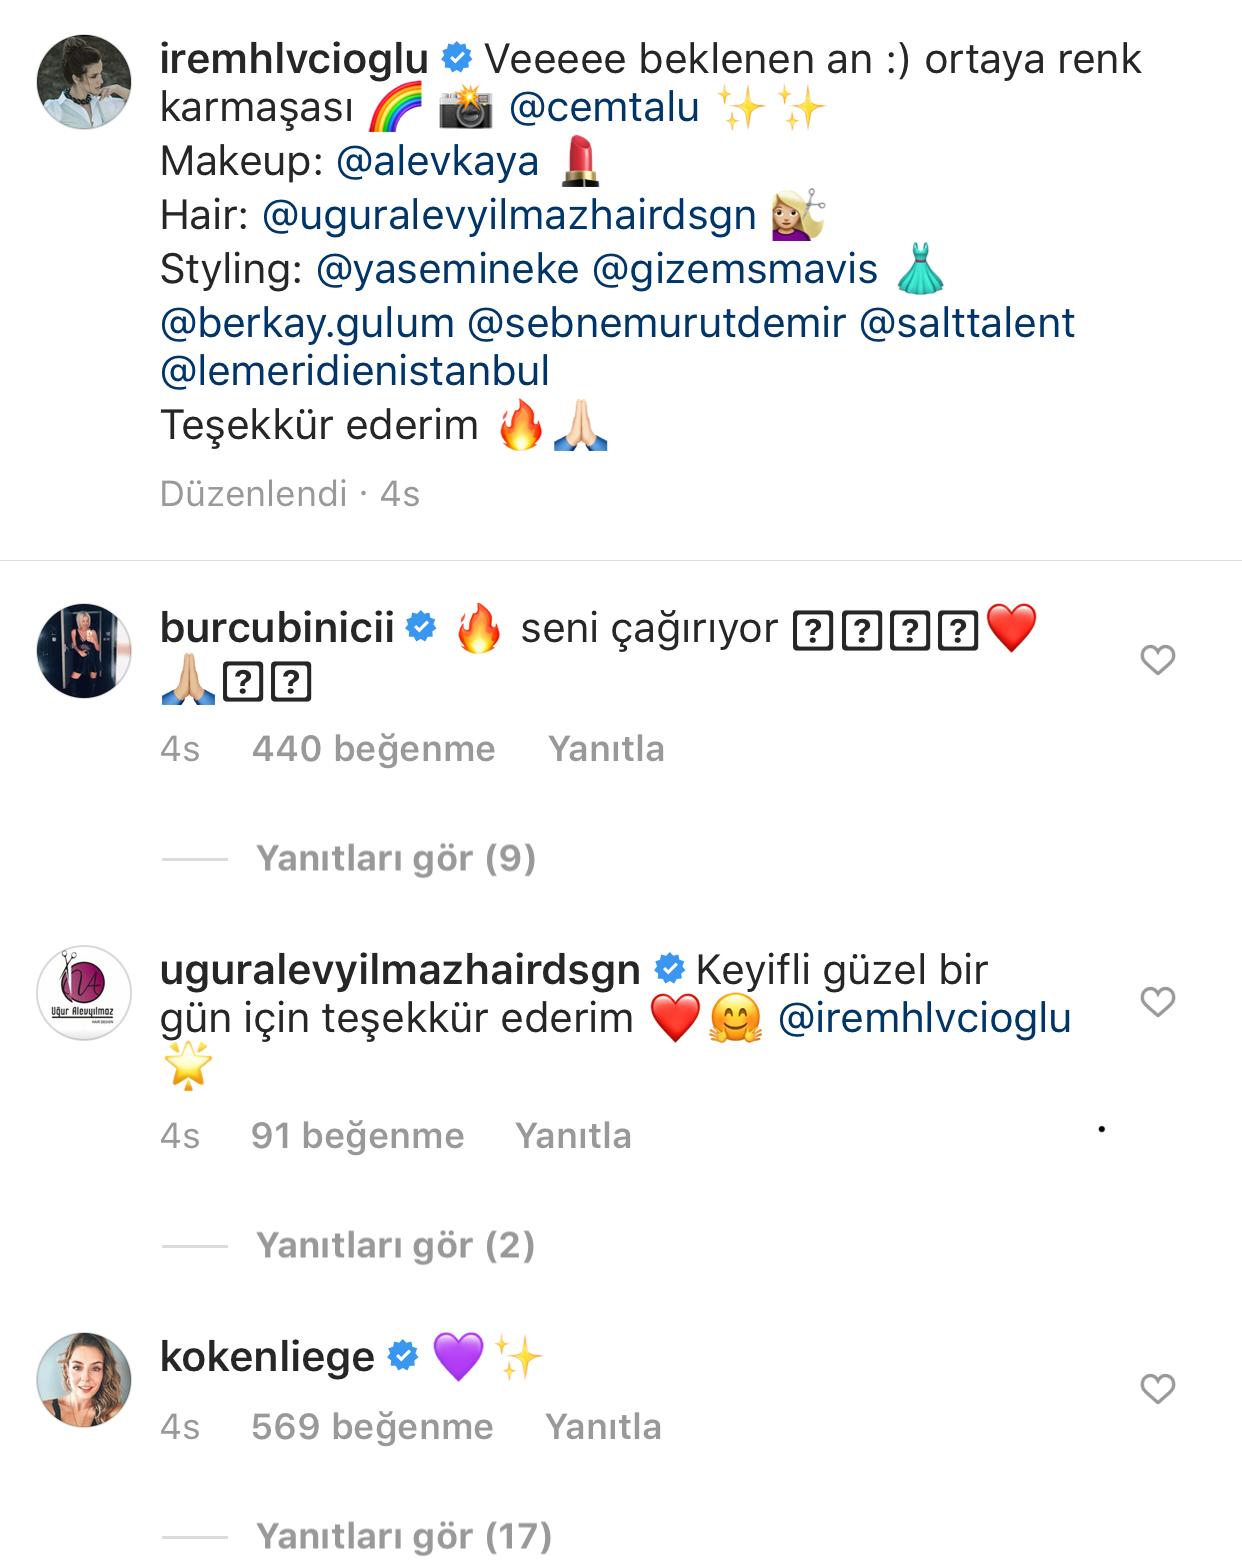 İrem Helvacıoğlu dekolteli pozuyla sosyal medyayı yaktı resmen! 8